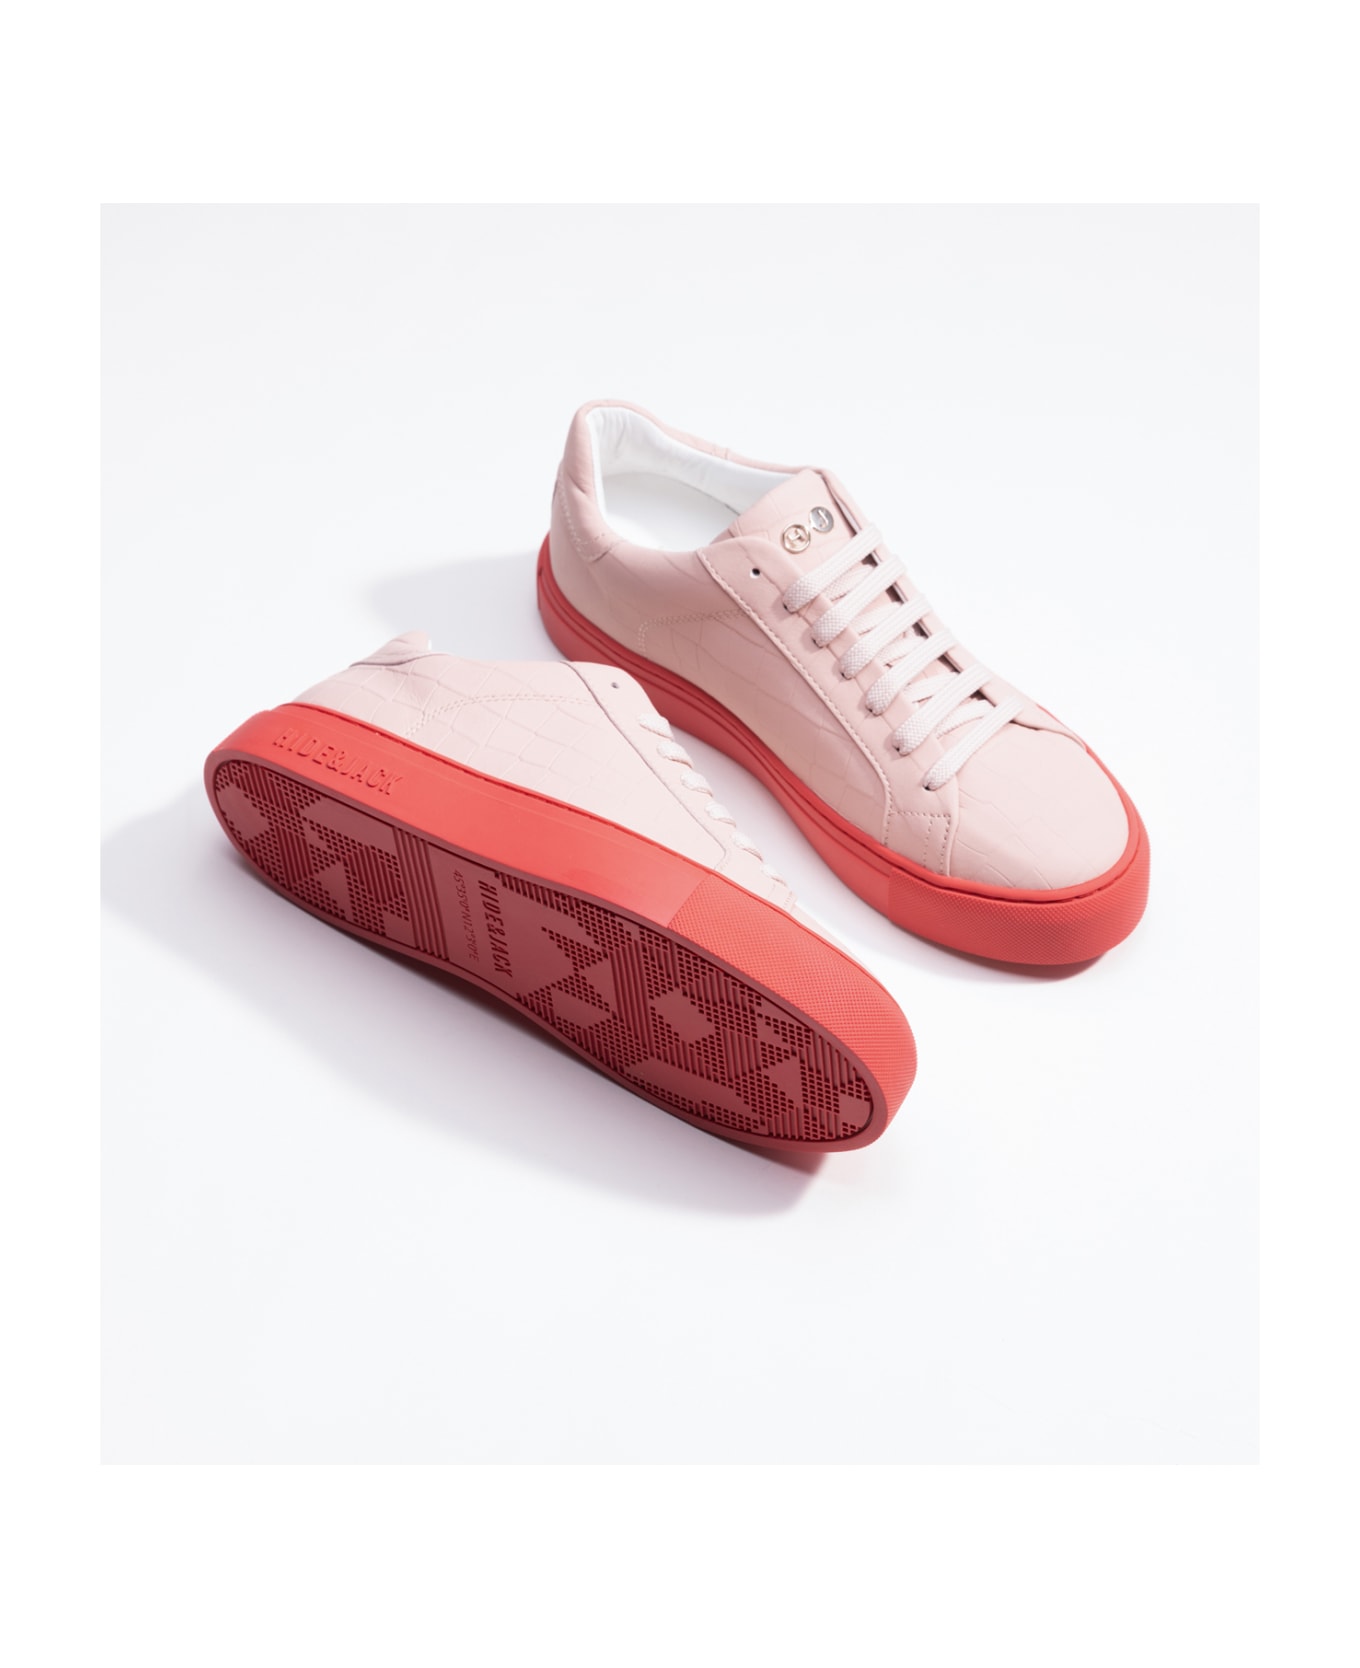 Hide&Jack Low Top Sneaker - Essence Pink Red